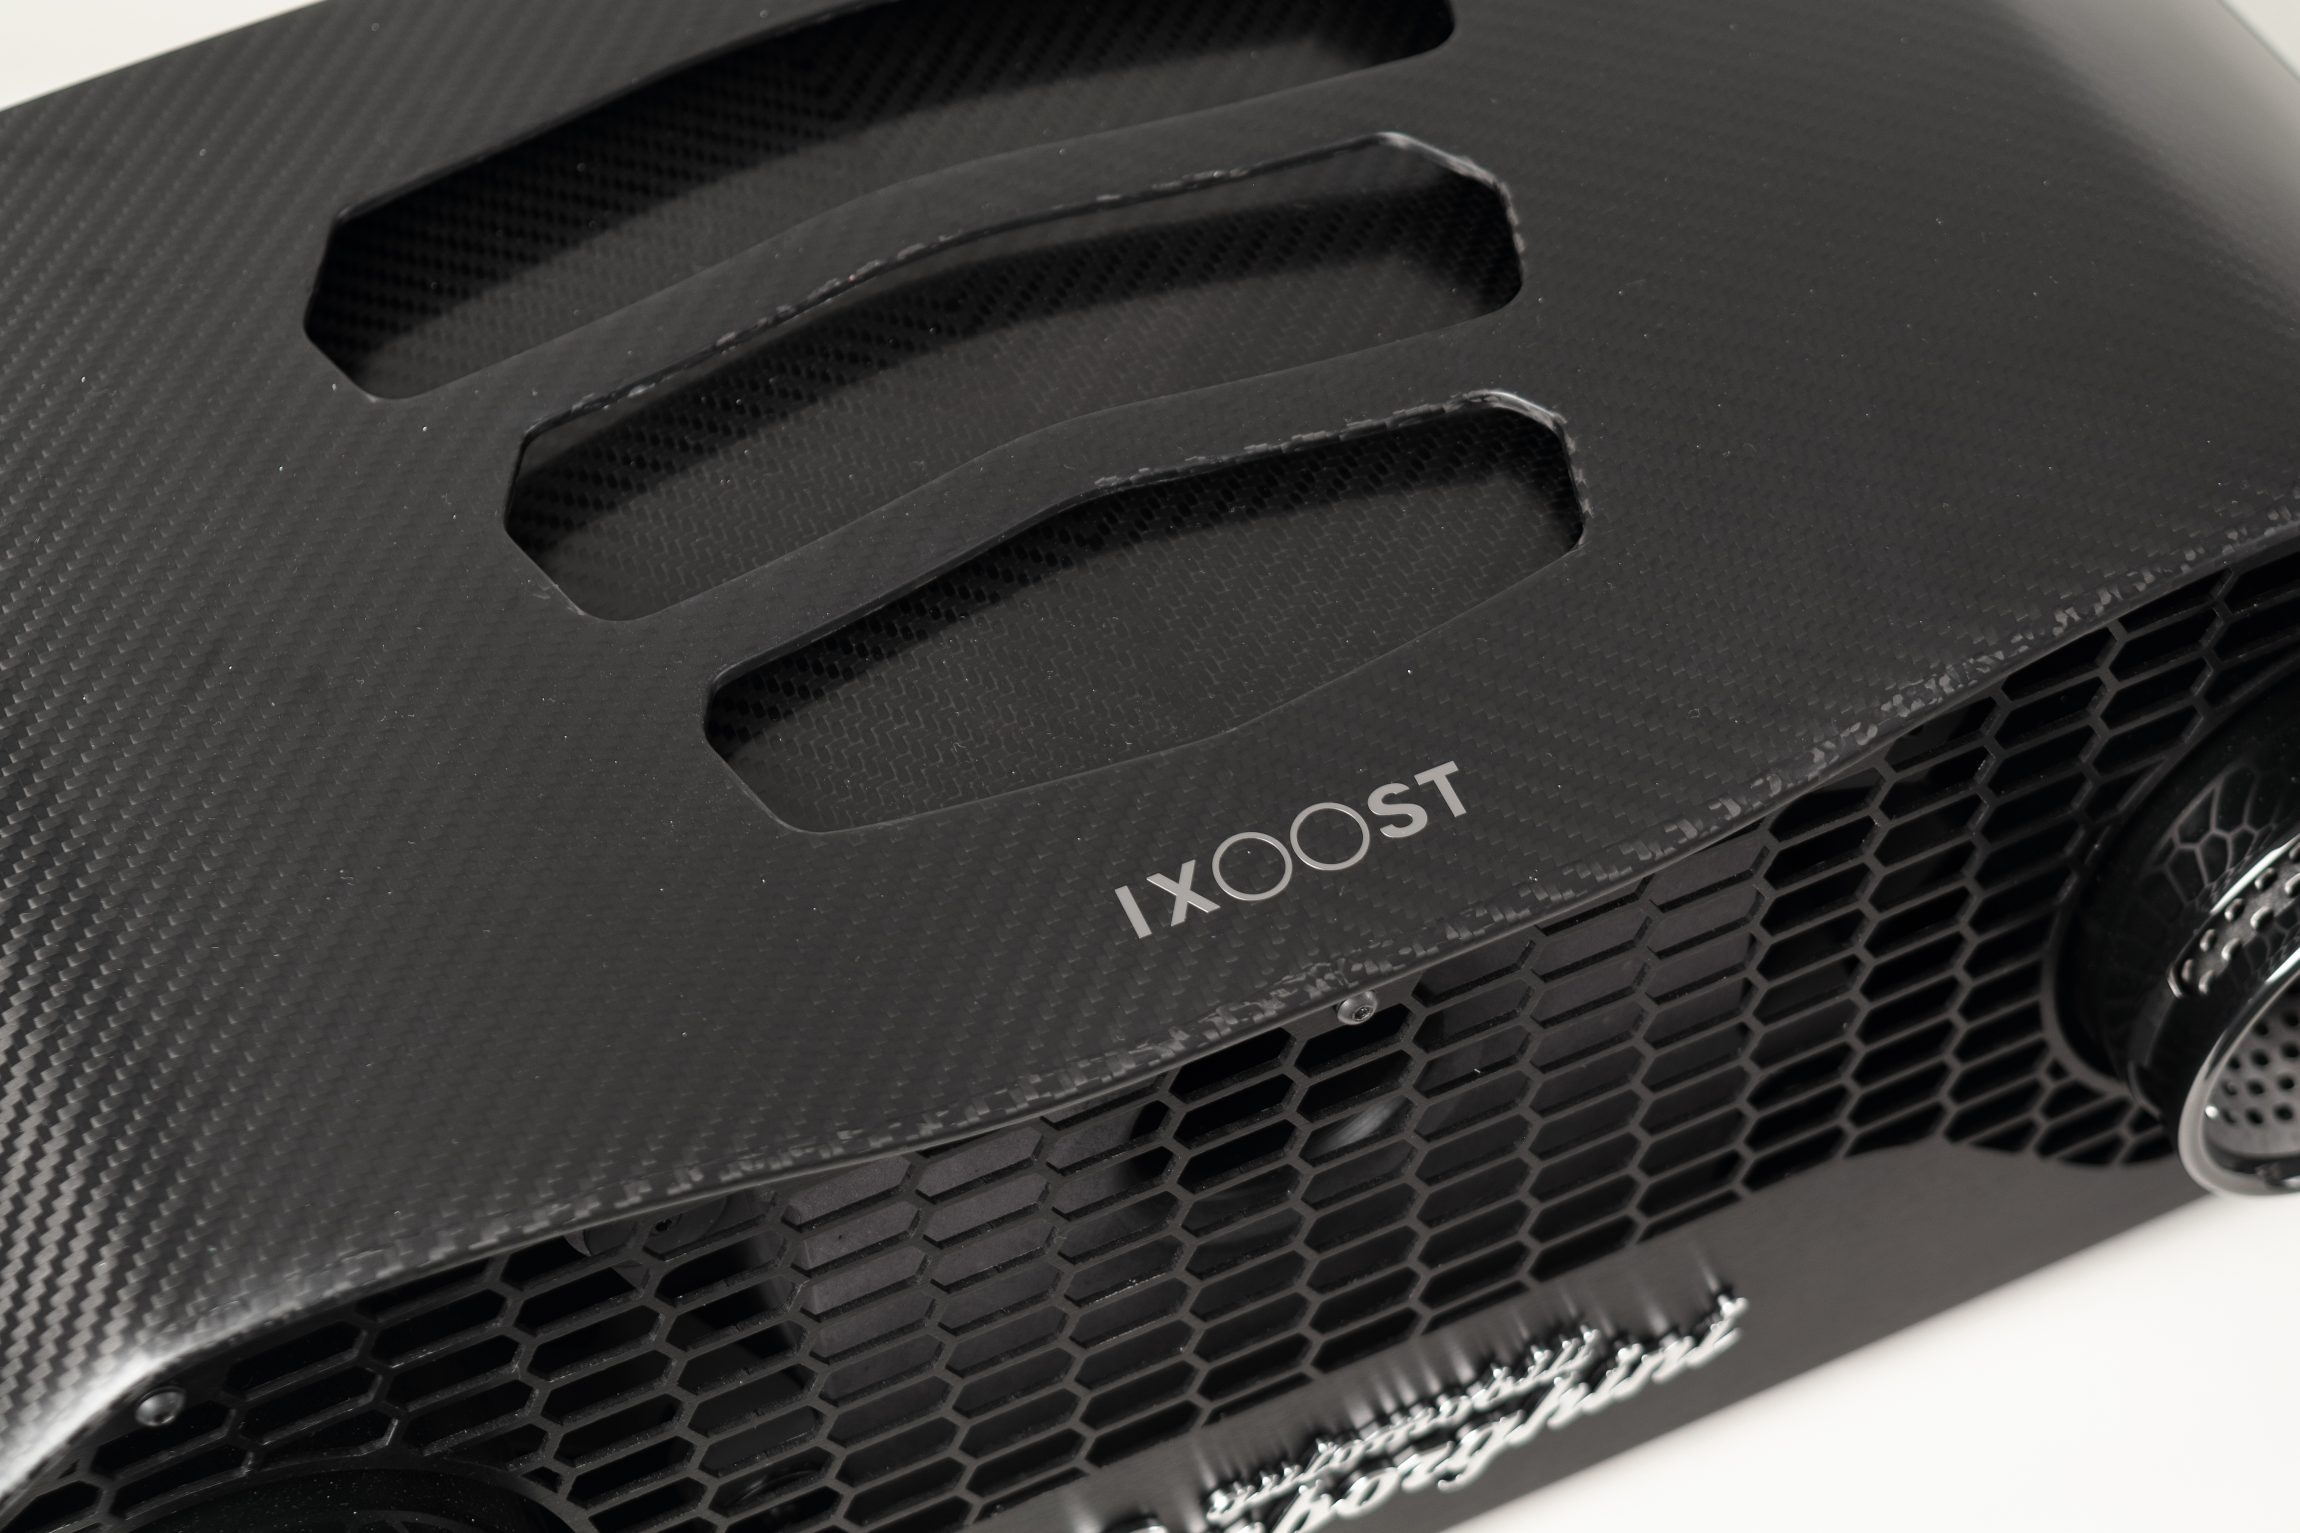 Impianti audio casa - creazione iXOOST ispirato alla Huracán Performante